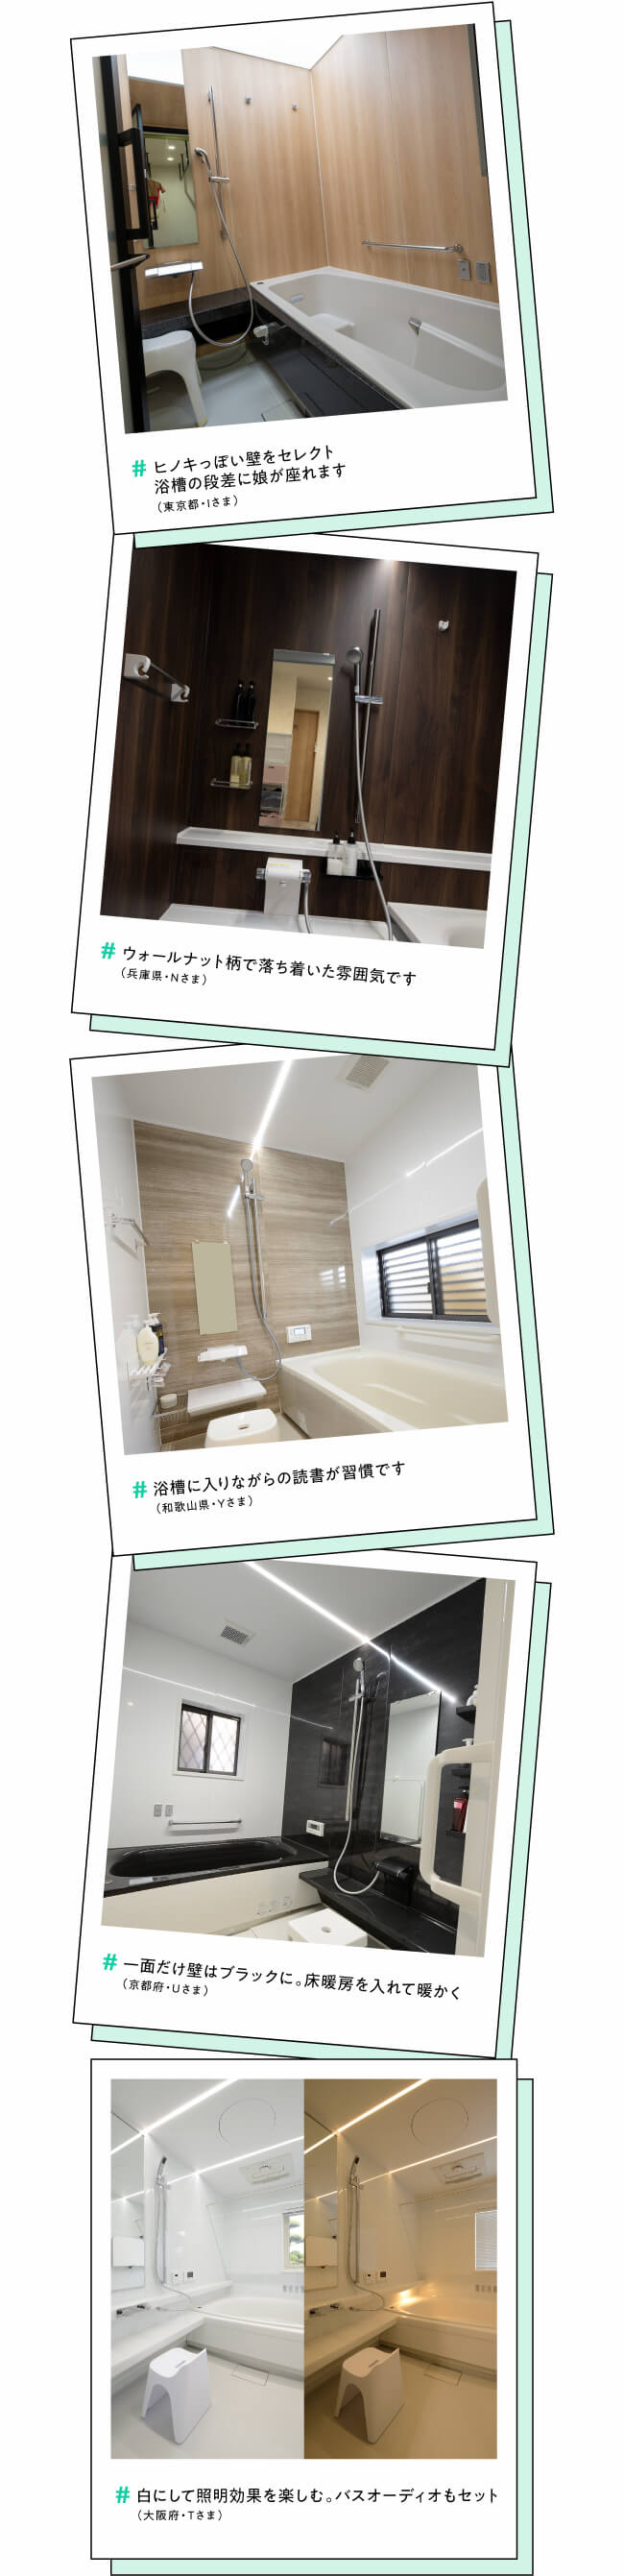 #ヒノキっぽい壁をセレクト浴槽の段差に娘が座れます（東京都・Iさま）　#ウォールナット柄で落ち着いた雰囲気です（兵庫県・Nさま）　#浴槽に入りながらの読書が習慣です（和歌山県・Yさま）　#一面だけ壁はブラックに。床暖房を入れて暖かく（京都府・Uさま）　#白にして照明効果を楽しむ。バスオーディオもセット（大阪府・Tさま）